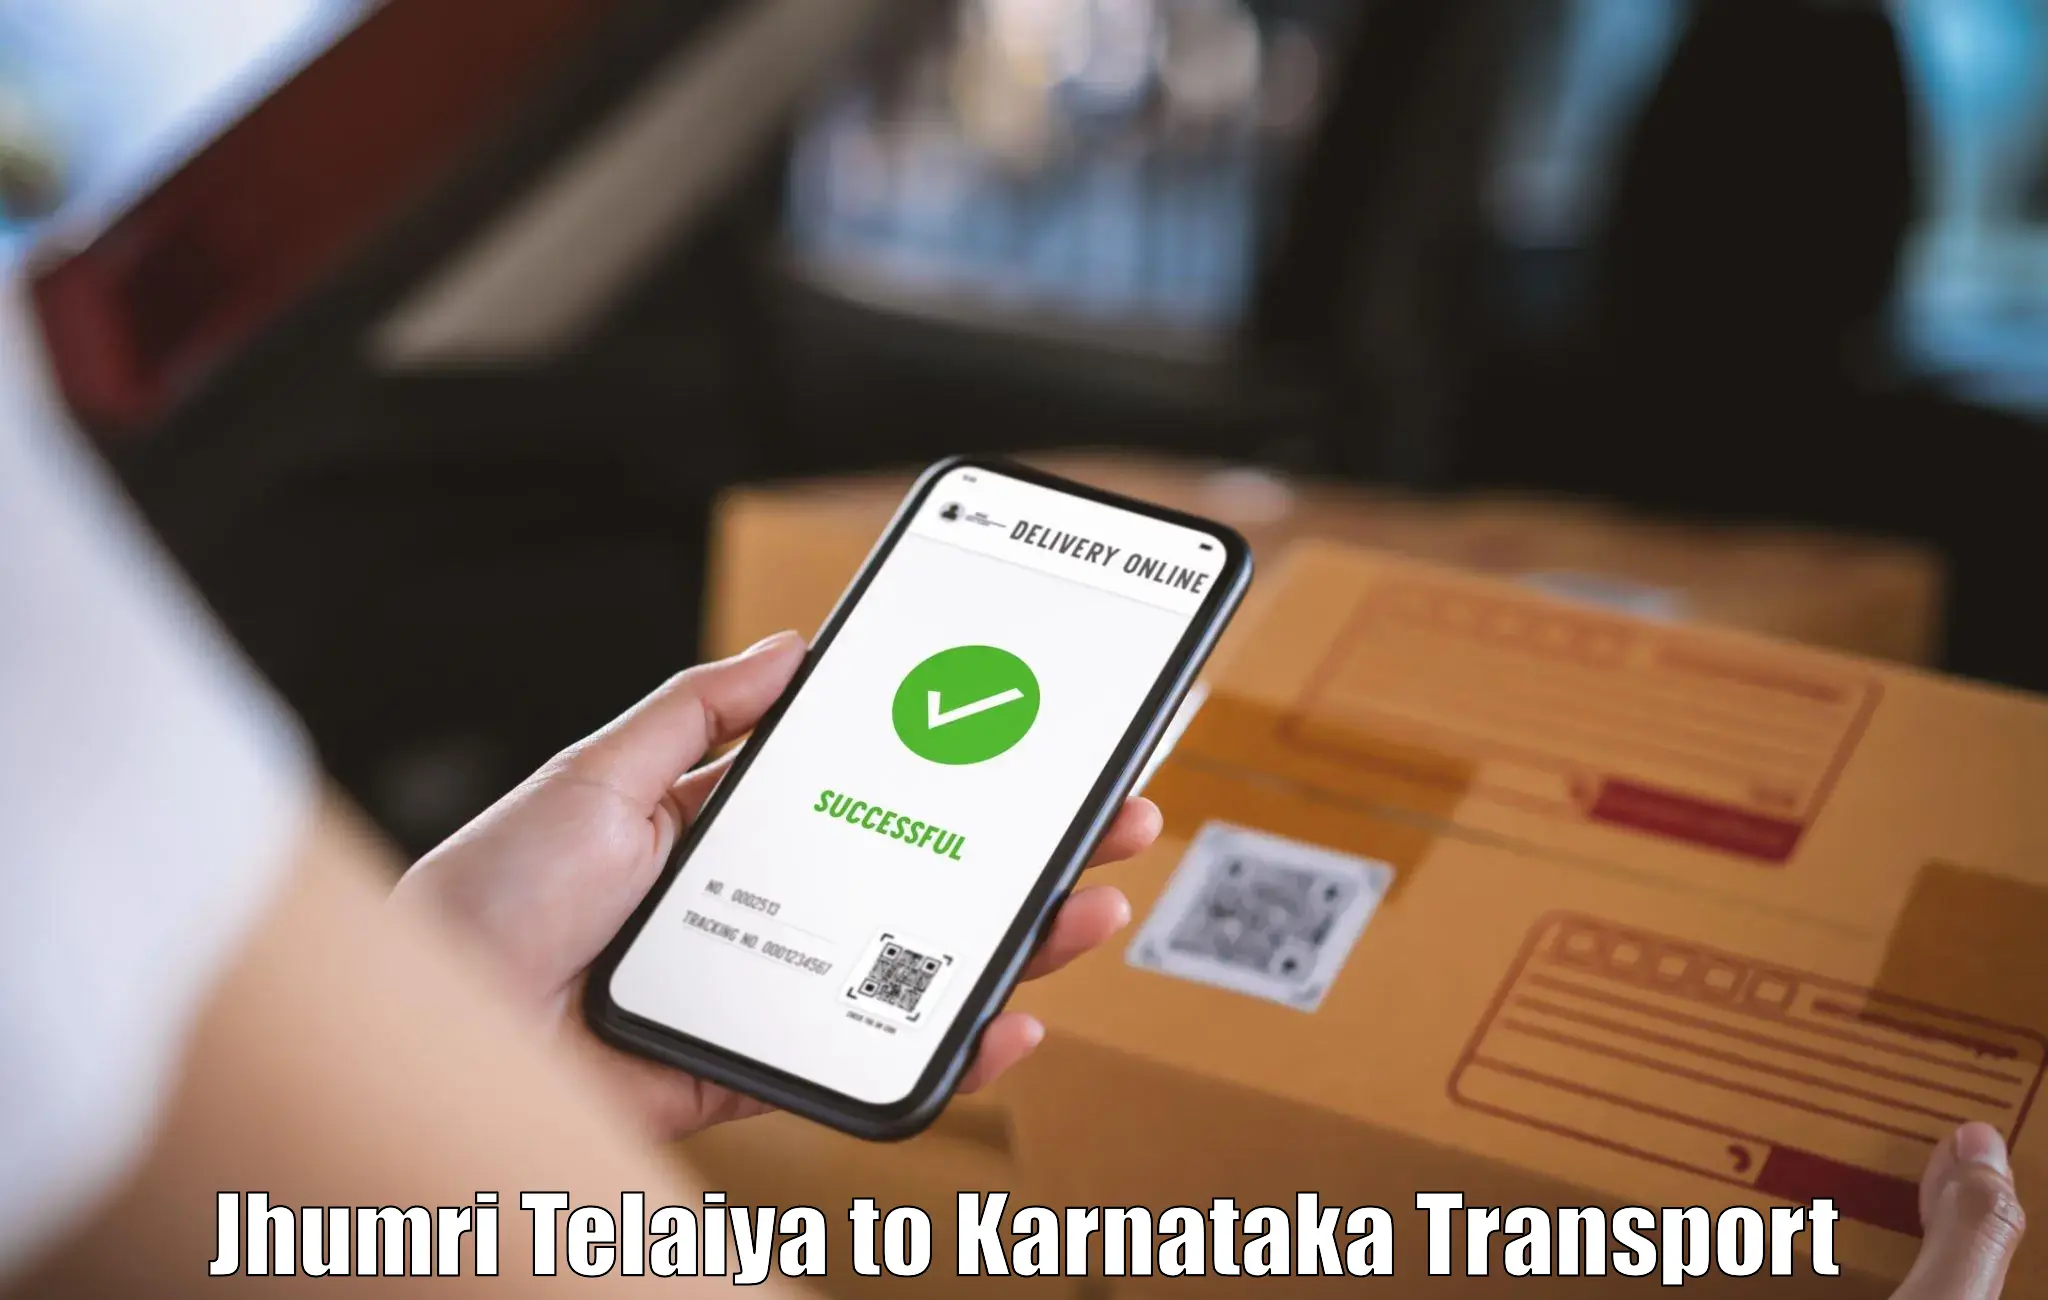 Online transport service in Jhumri Telaiya to Mangalore Port